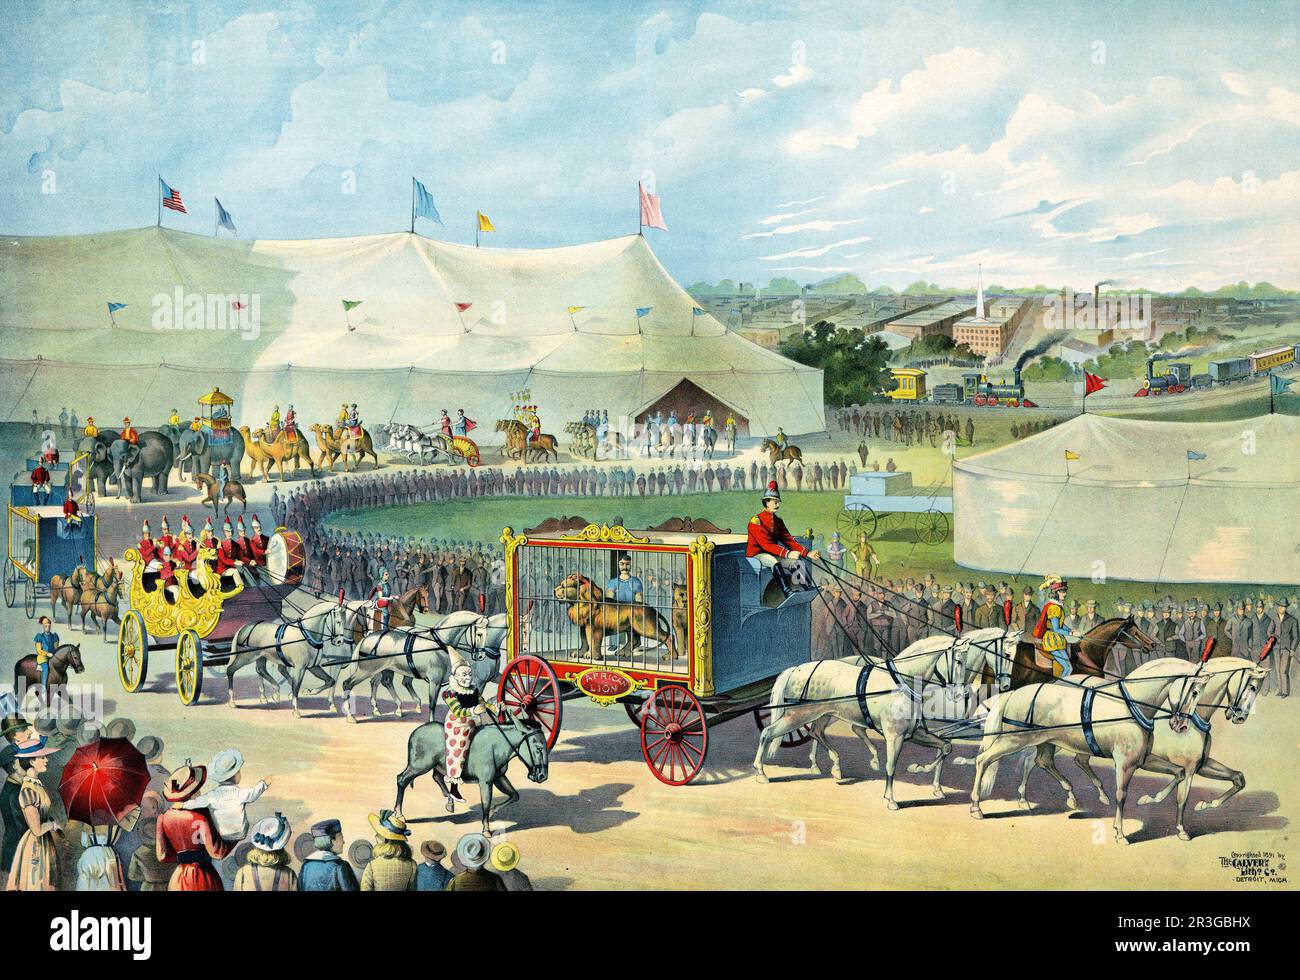 Stampa grafica vintage di una sfilata con leone in gabbia su carro e tenda da circo sullo sfondo, circa 1891. Foto Stock